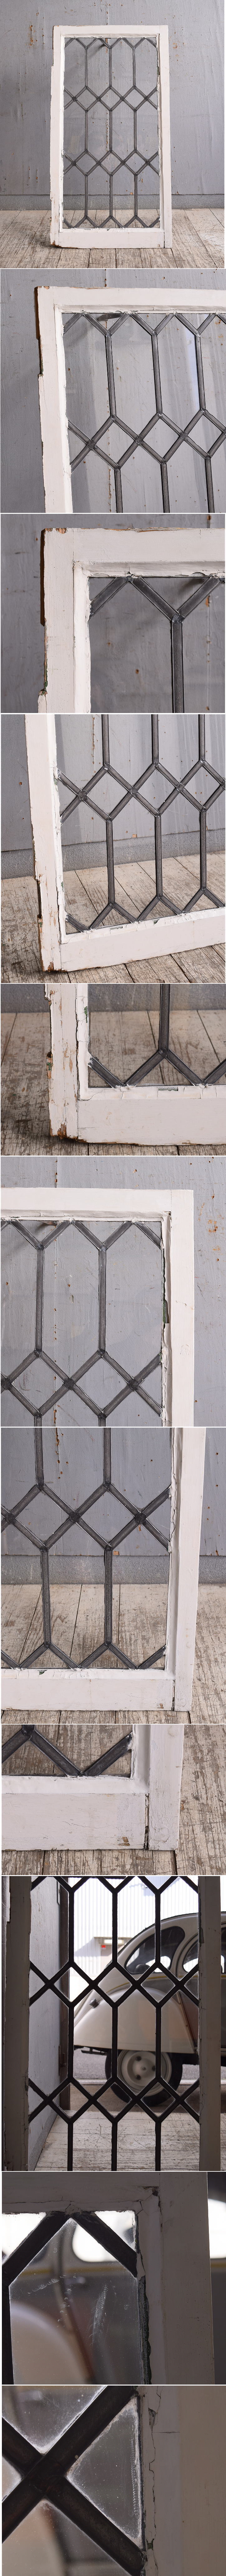 イギリス アンティーク 窓 無色透明 10520